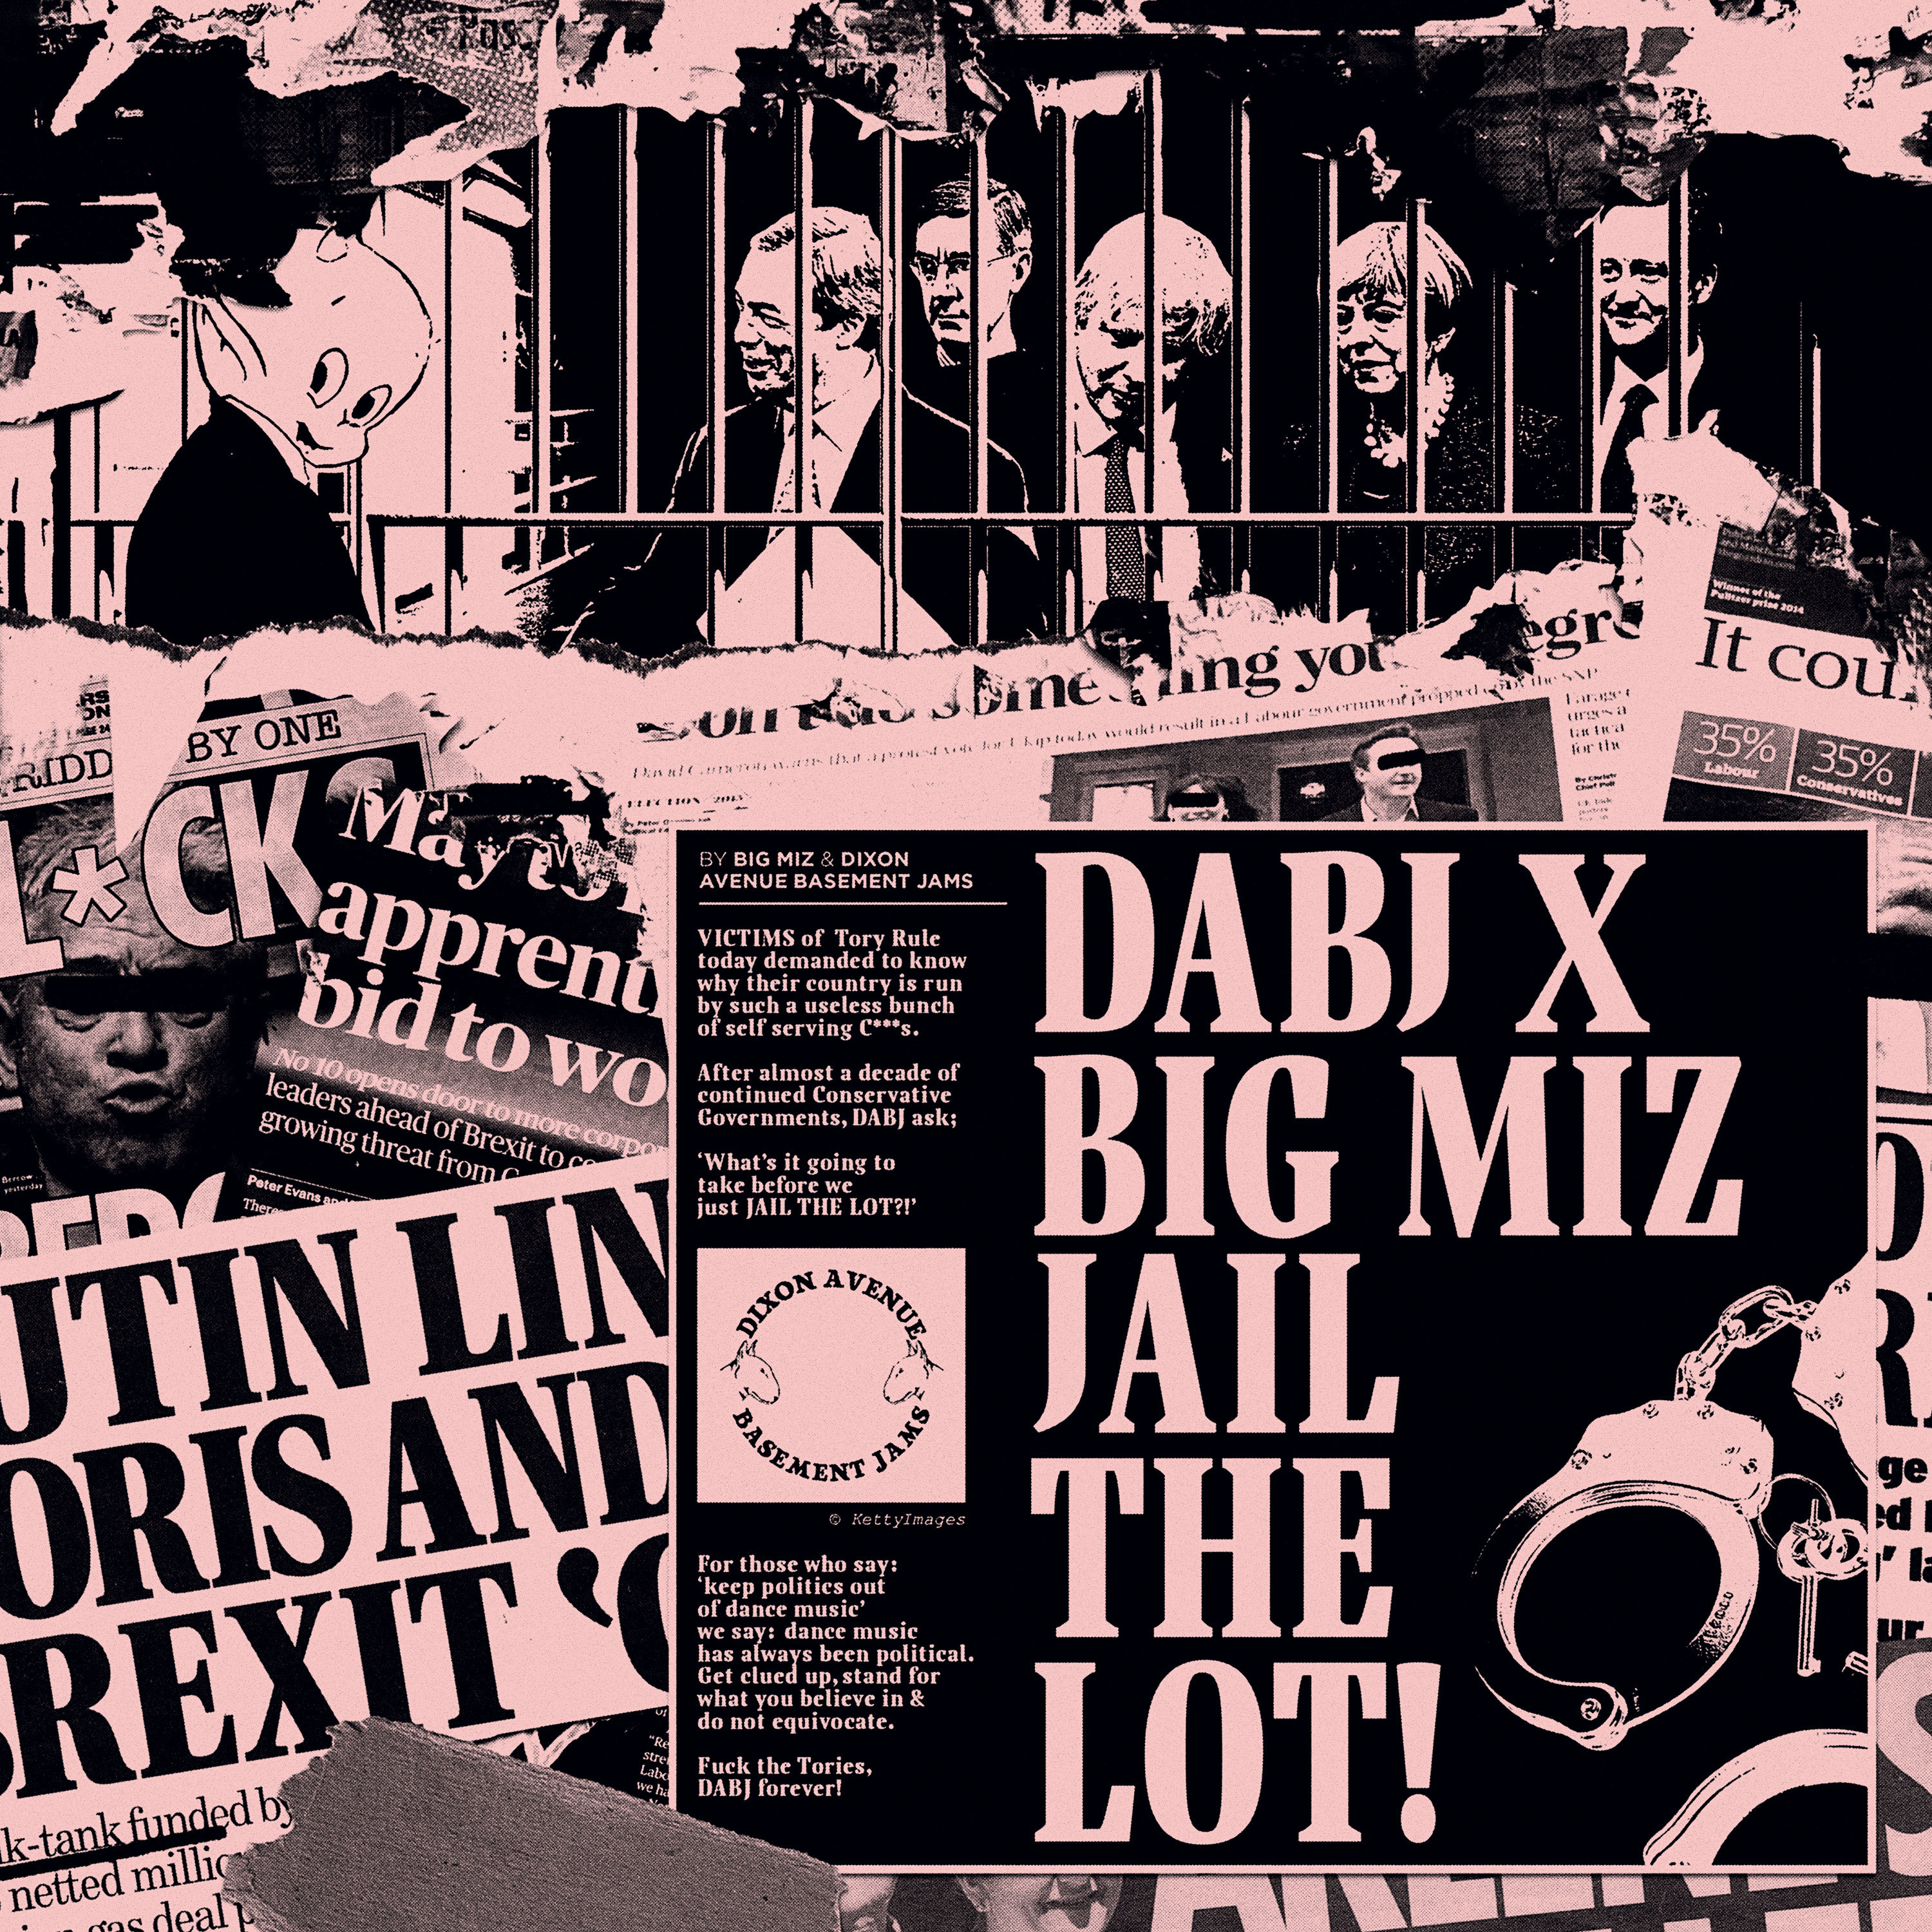 DABJ x Big Miz/JAIL THE LOT! EP 12"